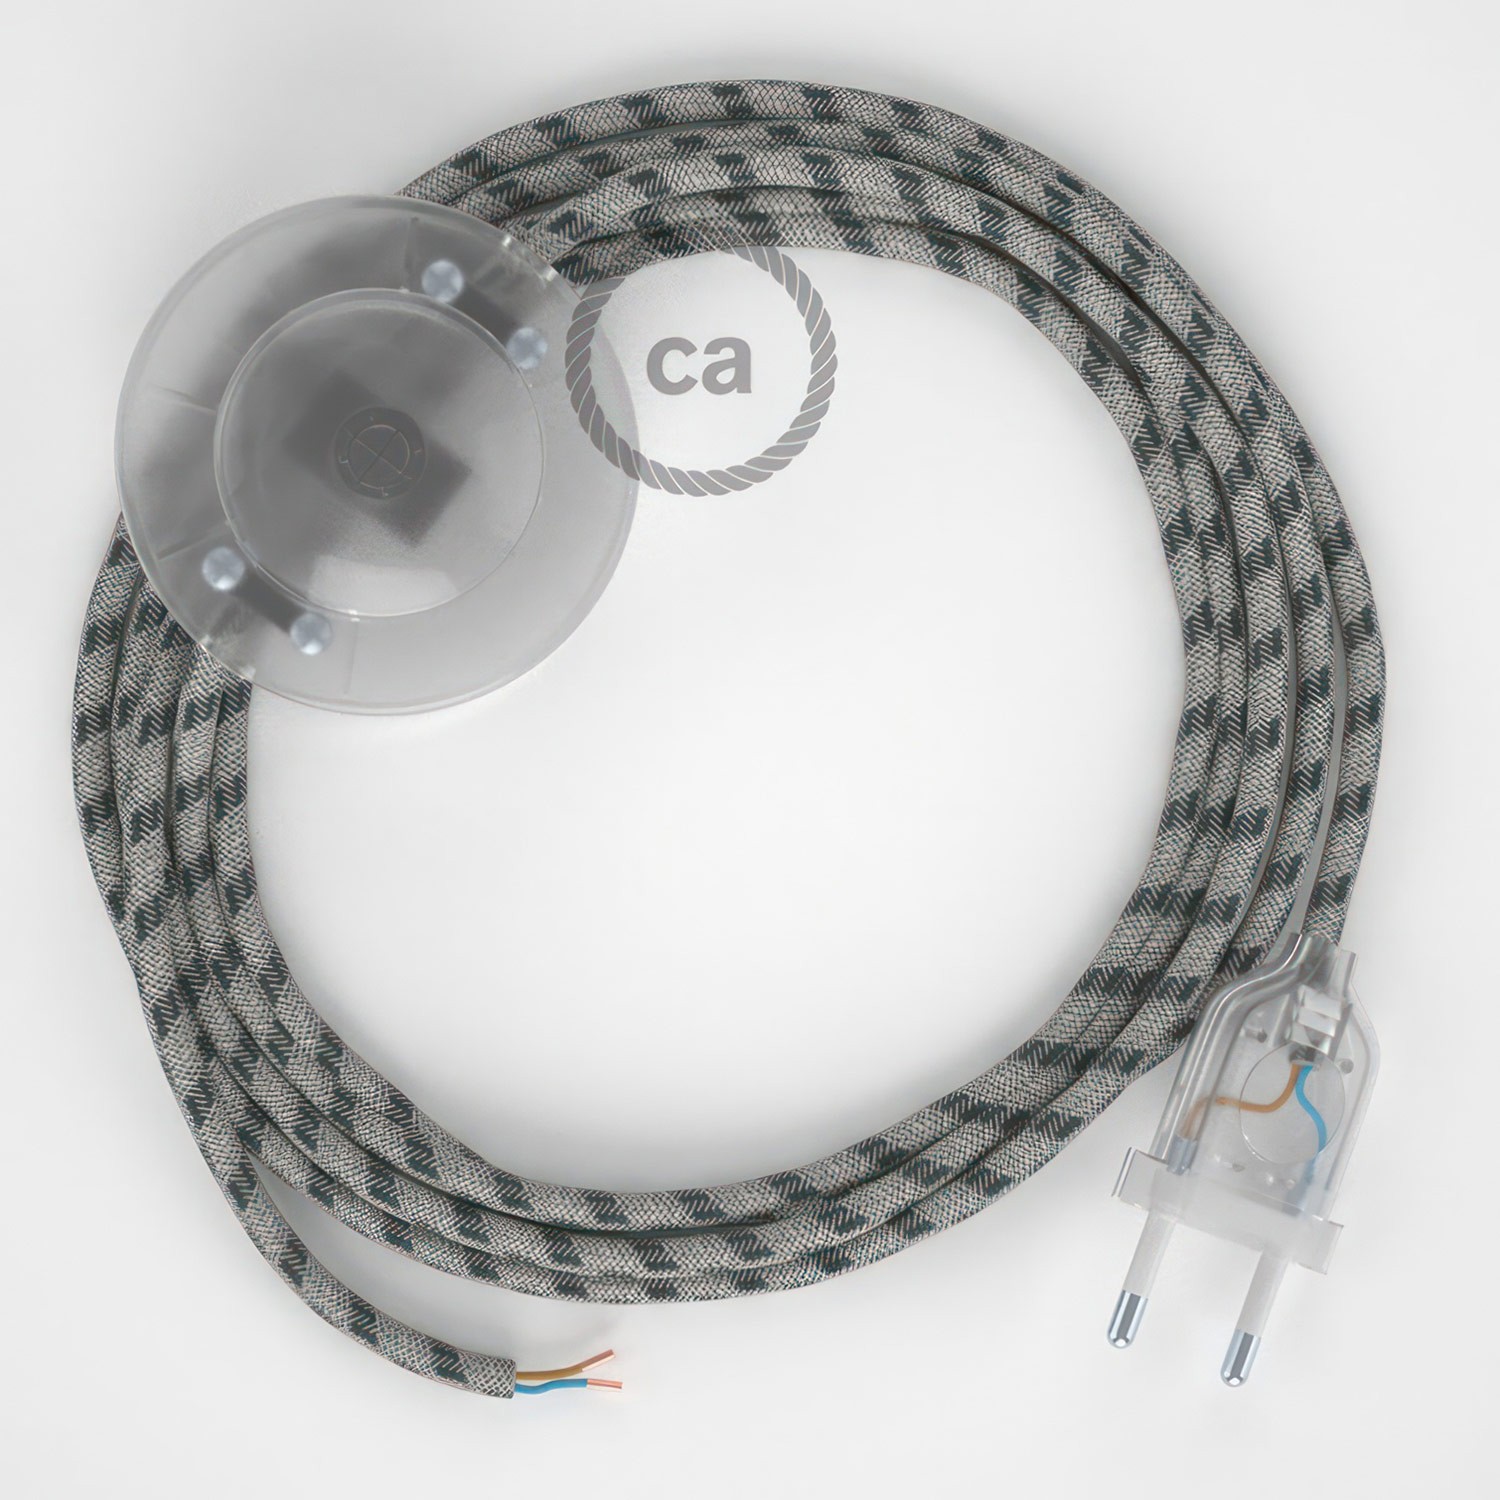 Cableado para lámpara de pie, cable RD54 Stripes Antracita 3 m. Elige tu el color de la clavija y del interruptor!